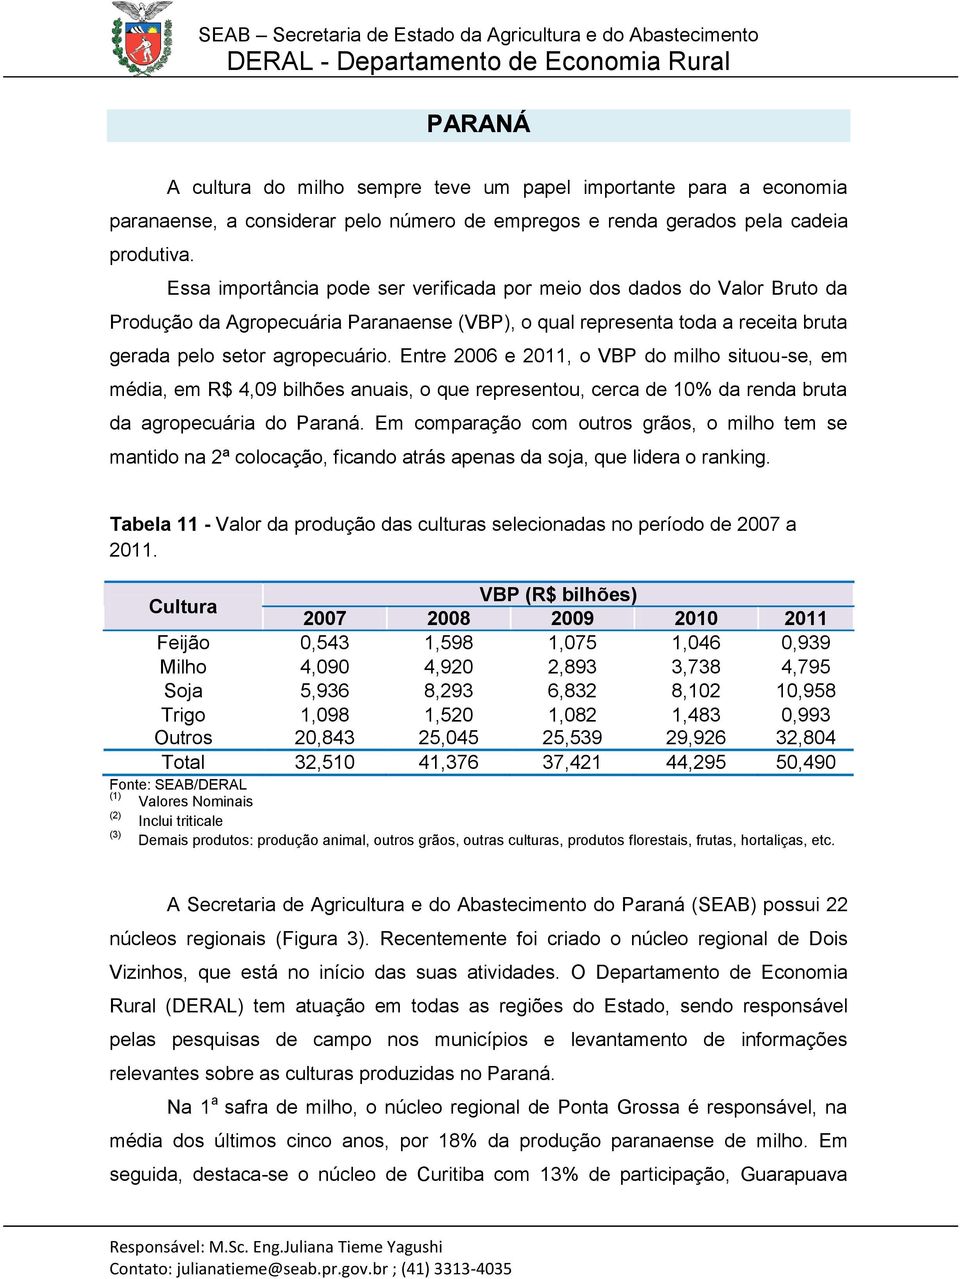 Entre 2006 e 2011, o VBP do milho situou-se, em média, em R$ 4,09 bilhões anuais, o que representou, cerca de 10% da renda bruta da agropecuária do Paraná.